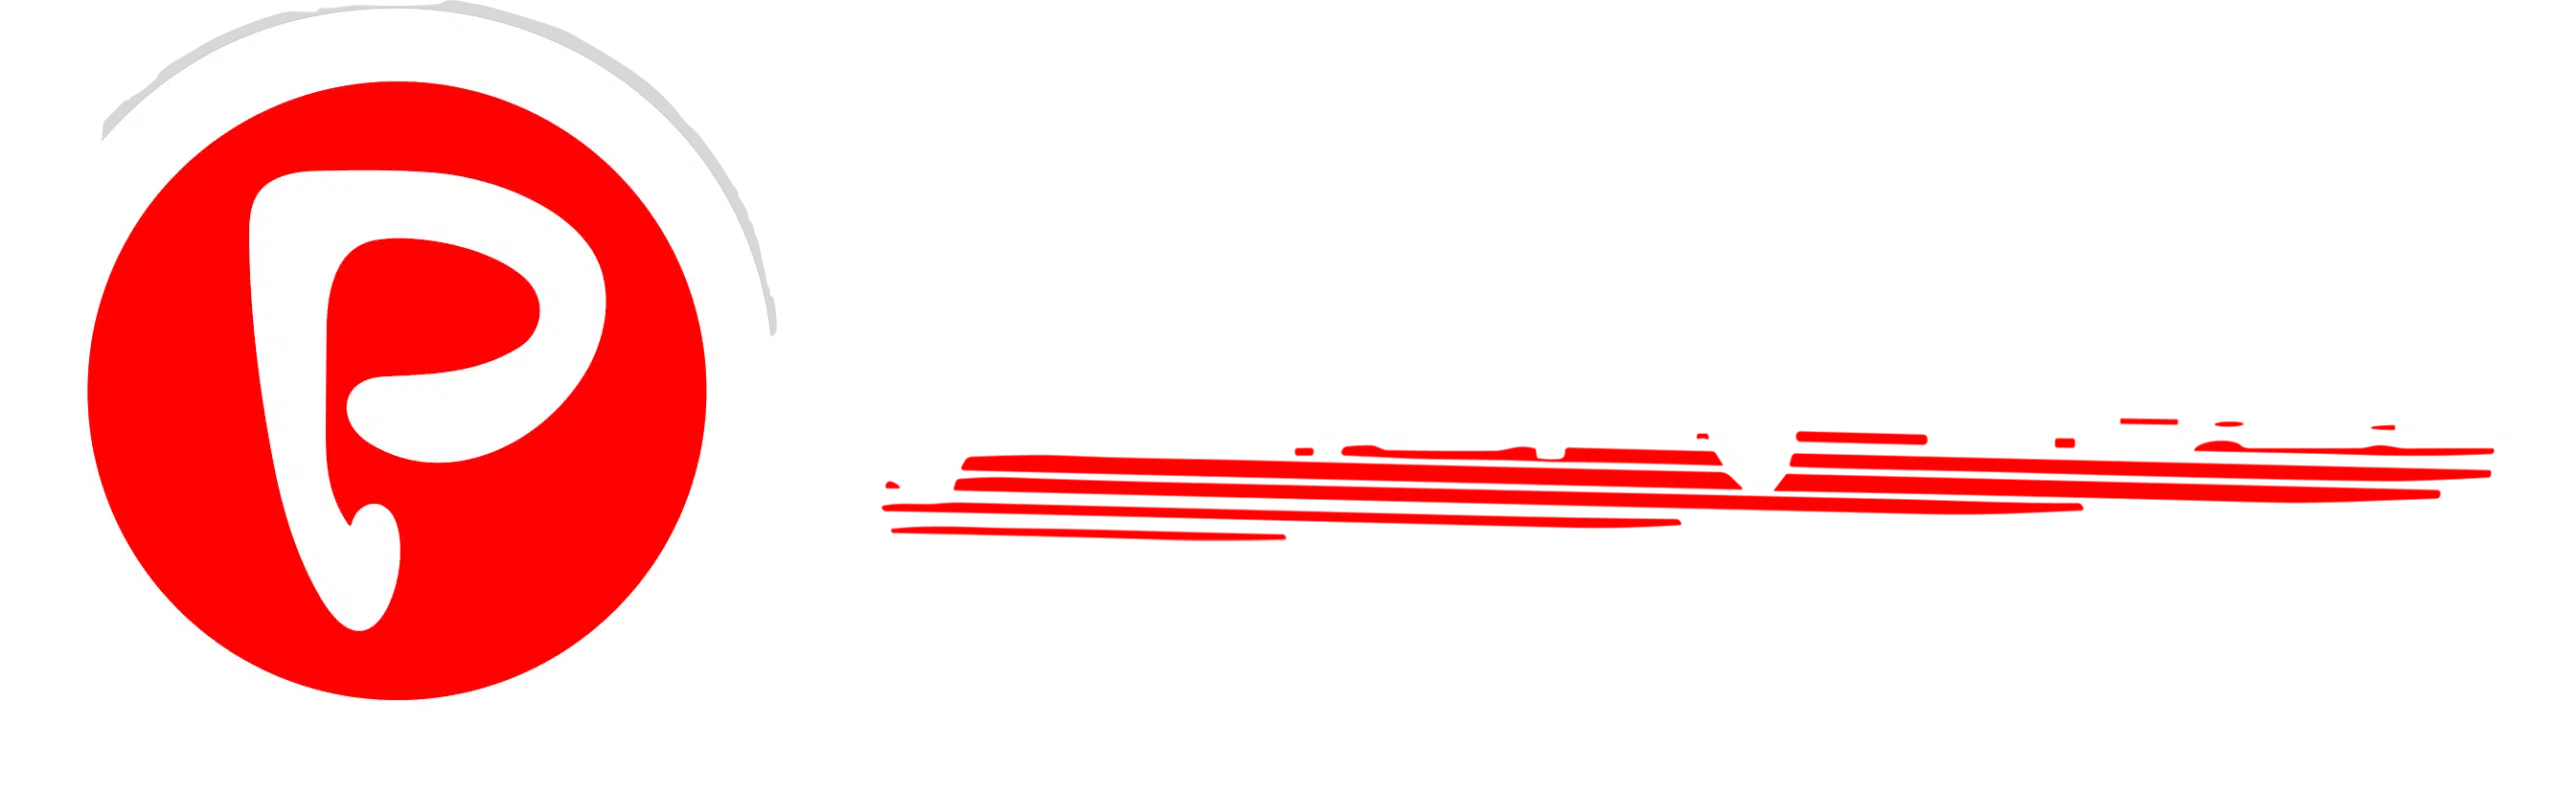 Portal Pebão